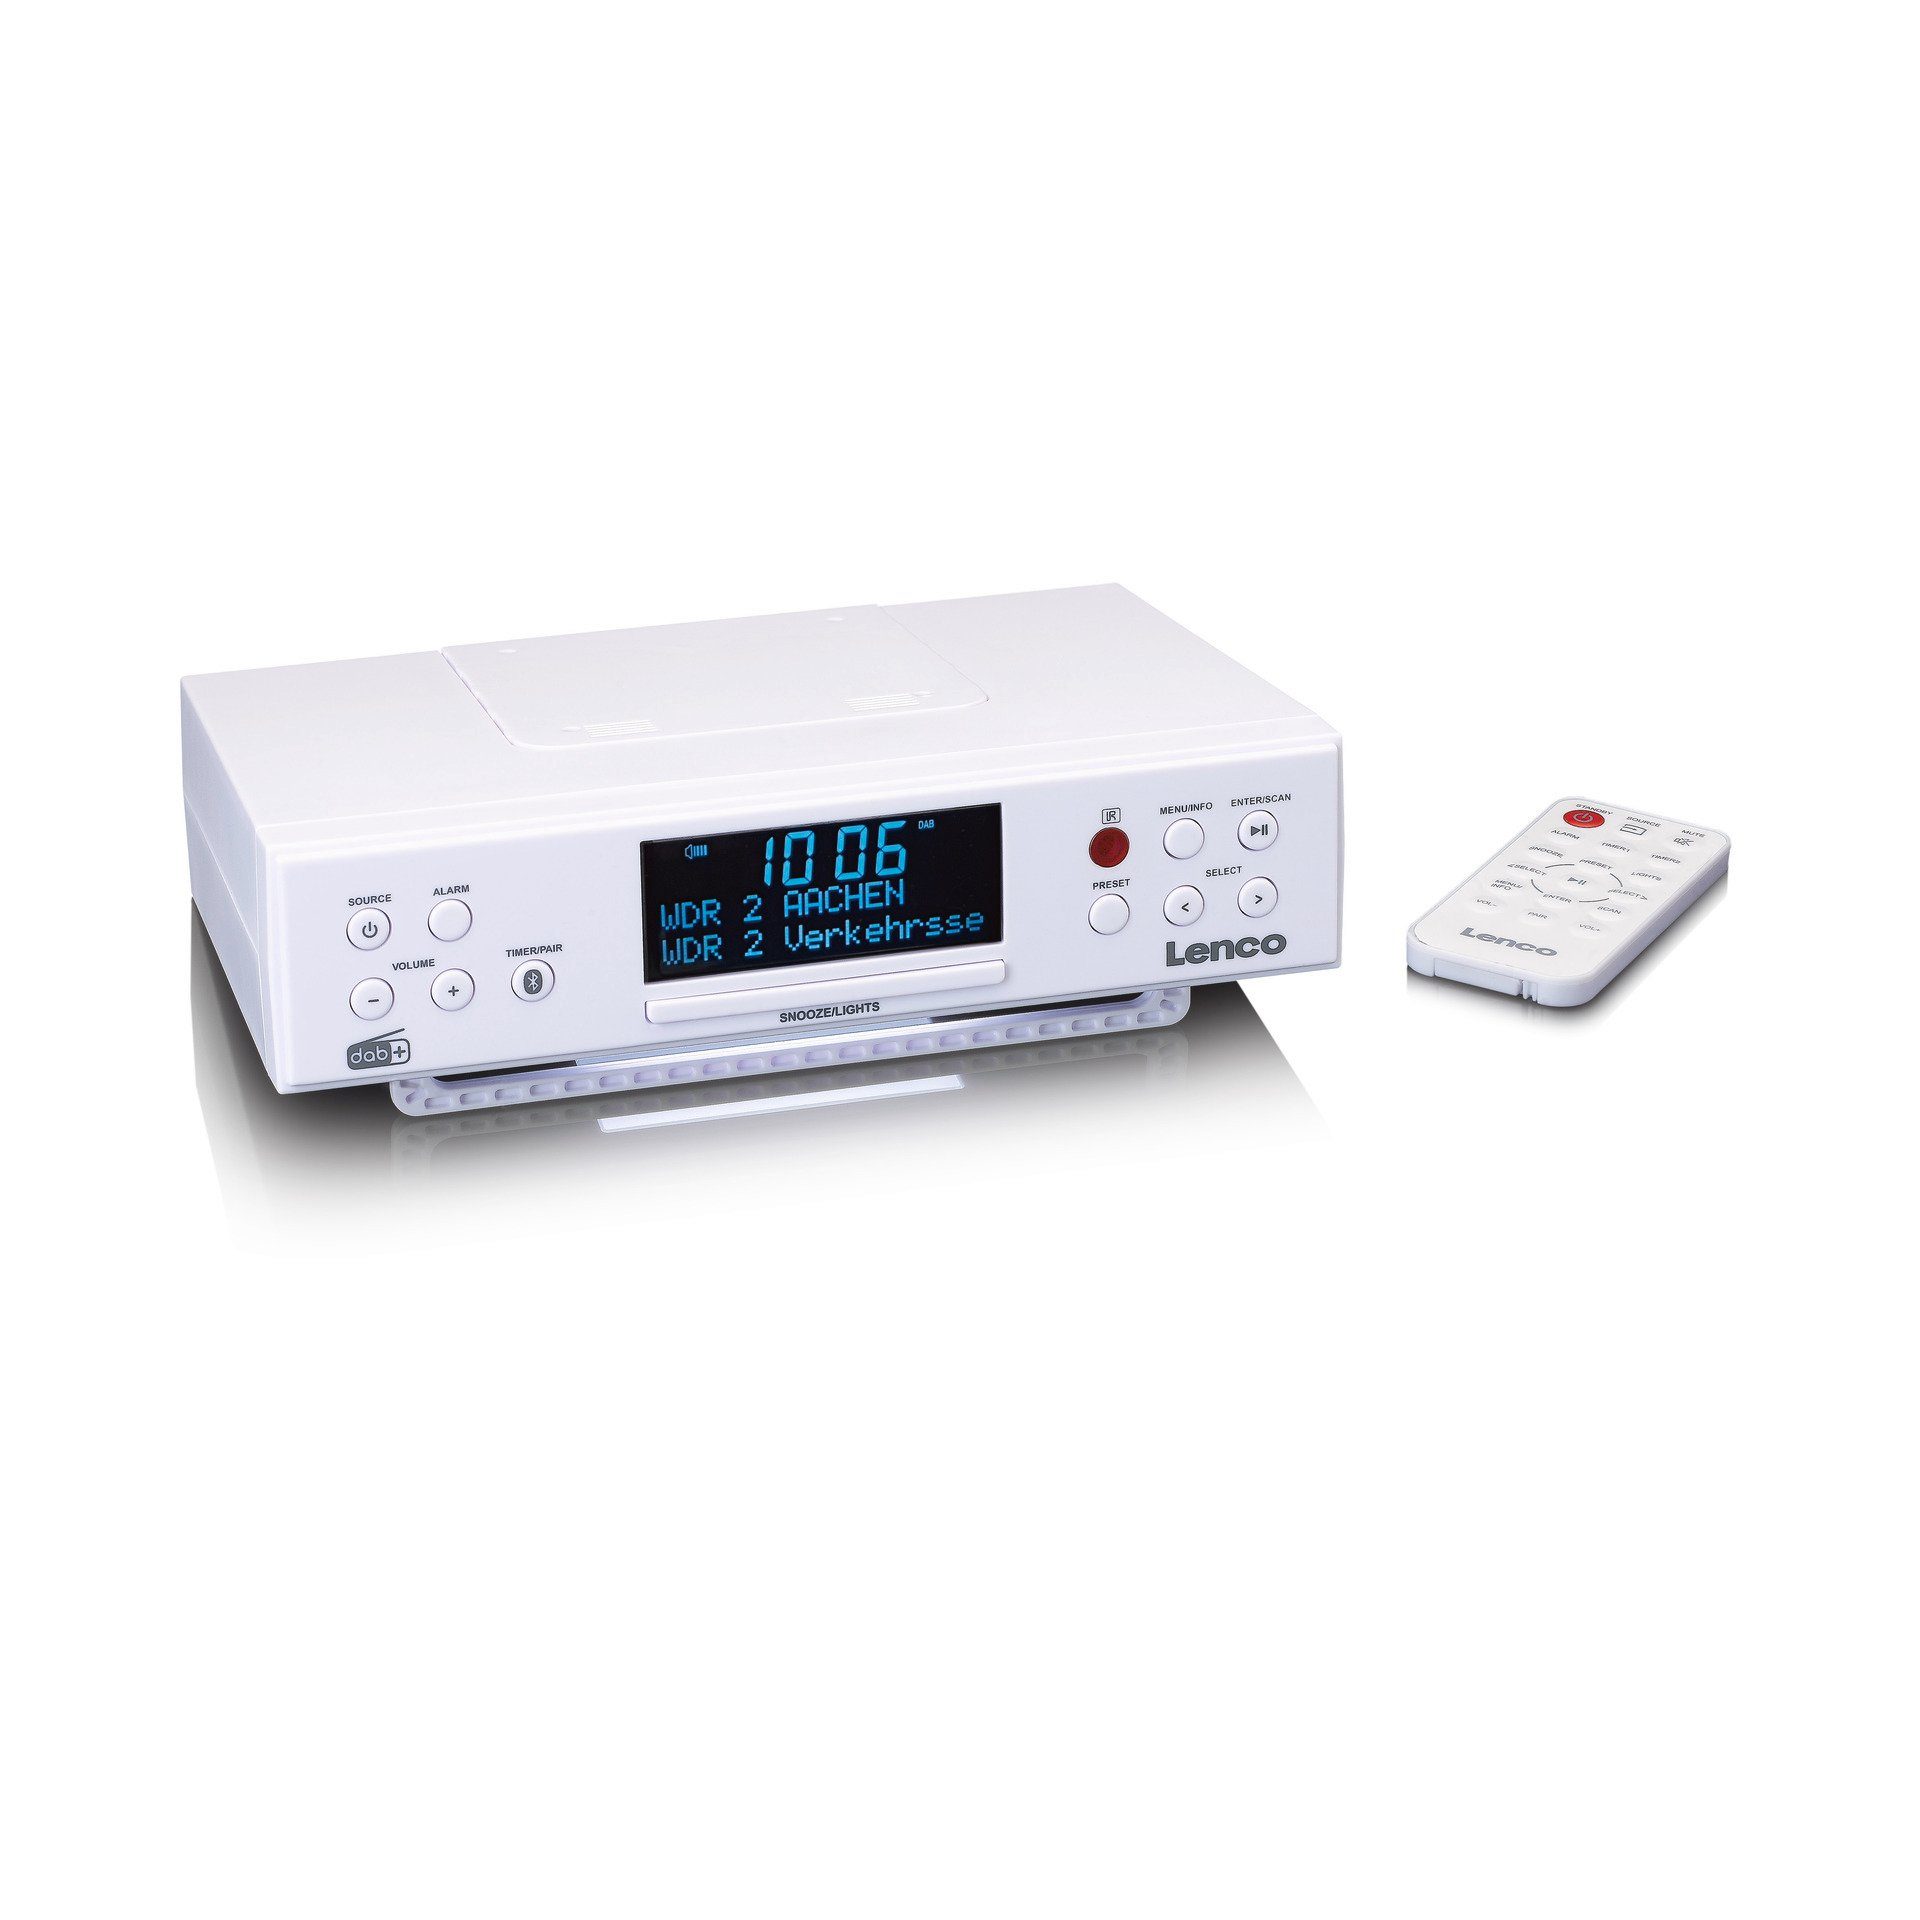 Lenco KCR-190WH Küchenradio Unterbau mit PLL-FM-Radio DAB+ BT Küchen-Radio (Digitalradio (DAB), 4 W) | Küchenradios